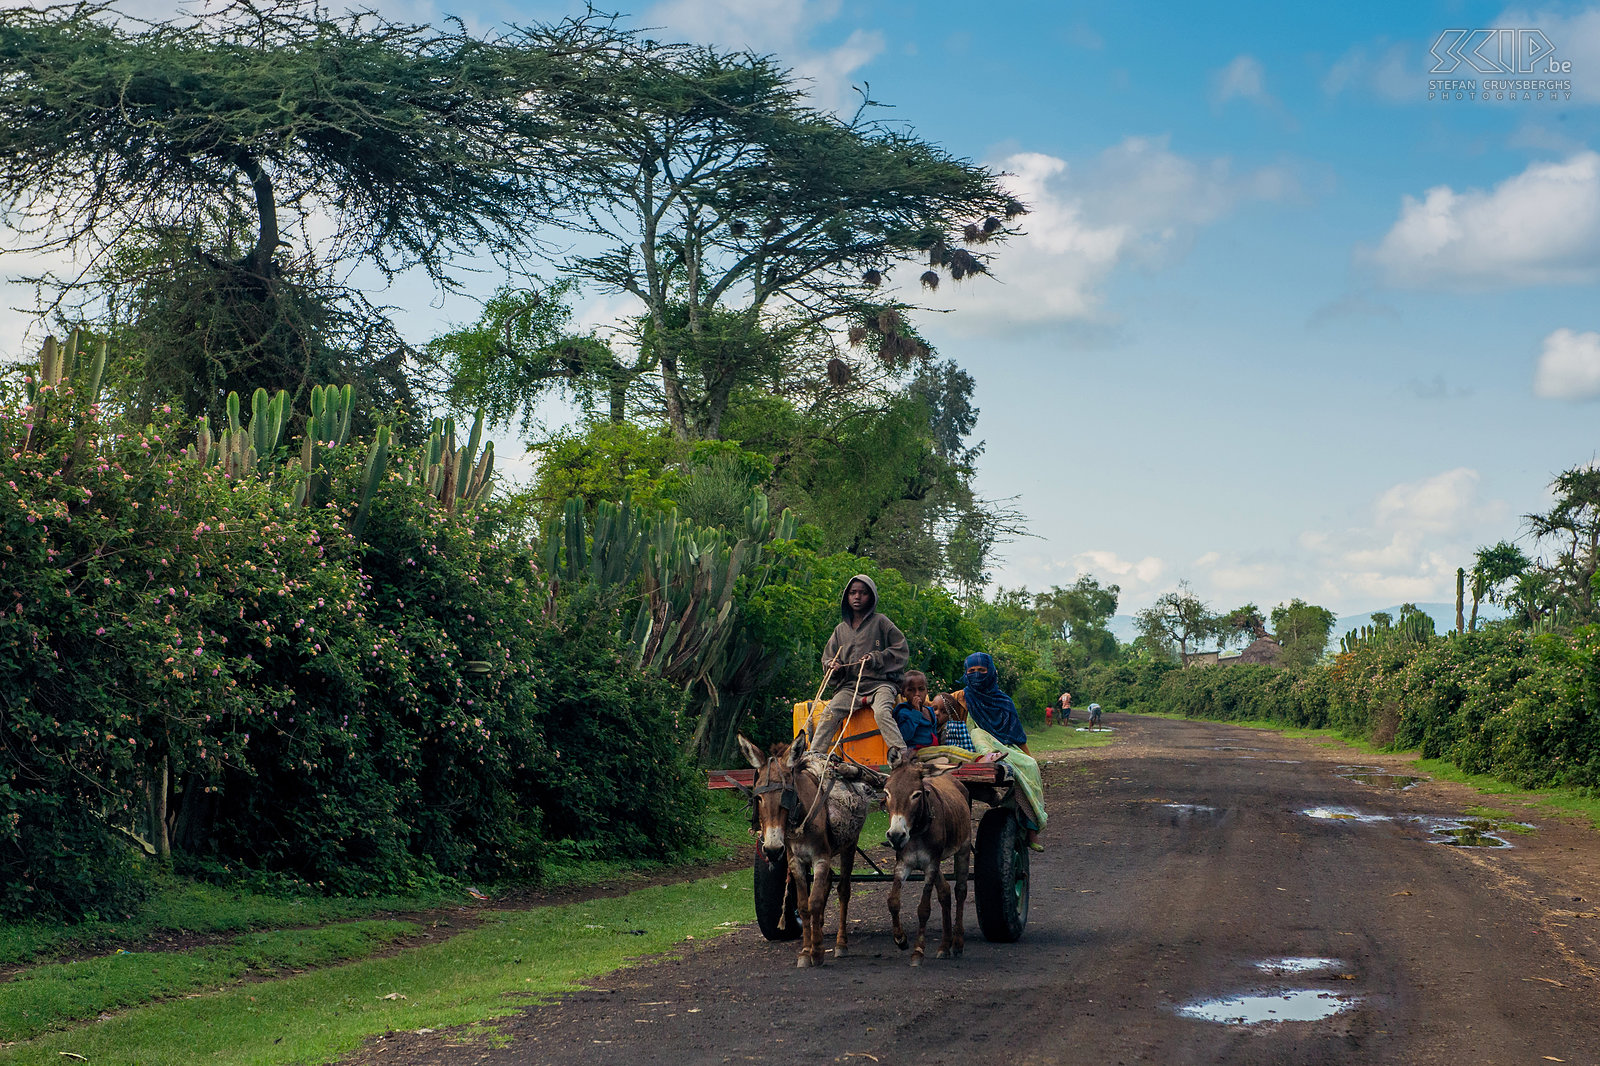 Ezelkar Een groot deel van het Oromo-volk in de regio tussen de Ethiopische Riftvallei en het Bale-gebergte is moslim en het meest gebruikte vervoelmiddel is de ezelkar. Stefan Cruysberghs